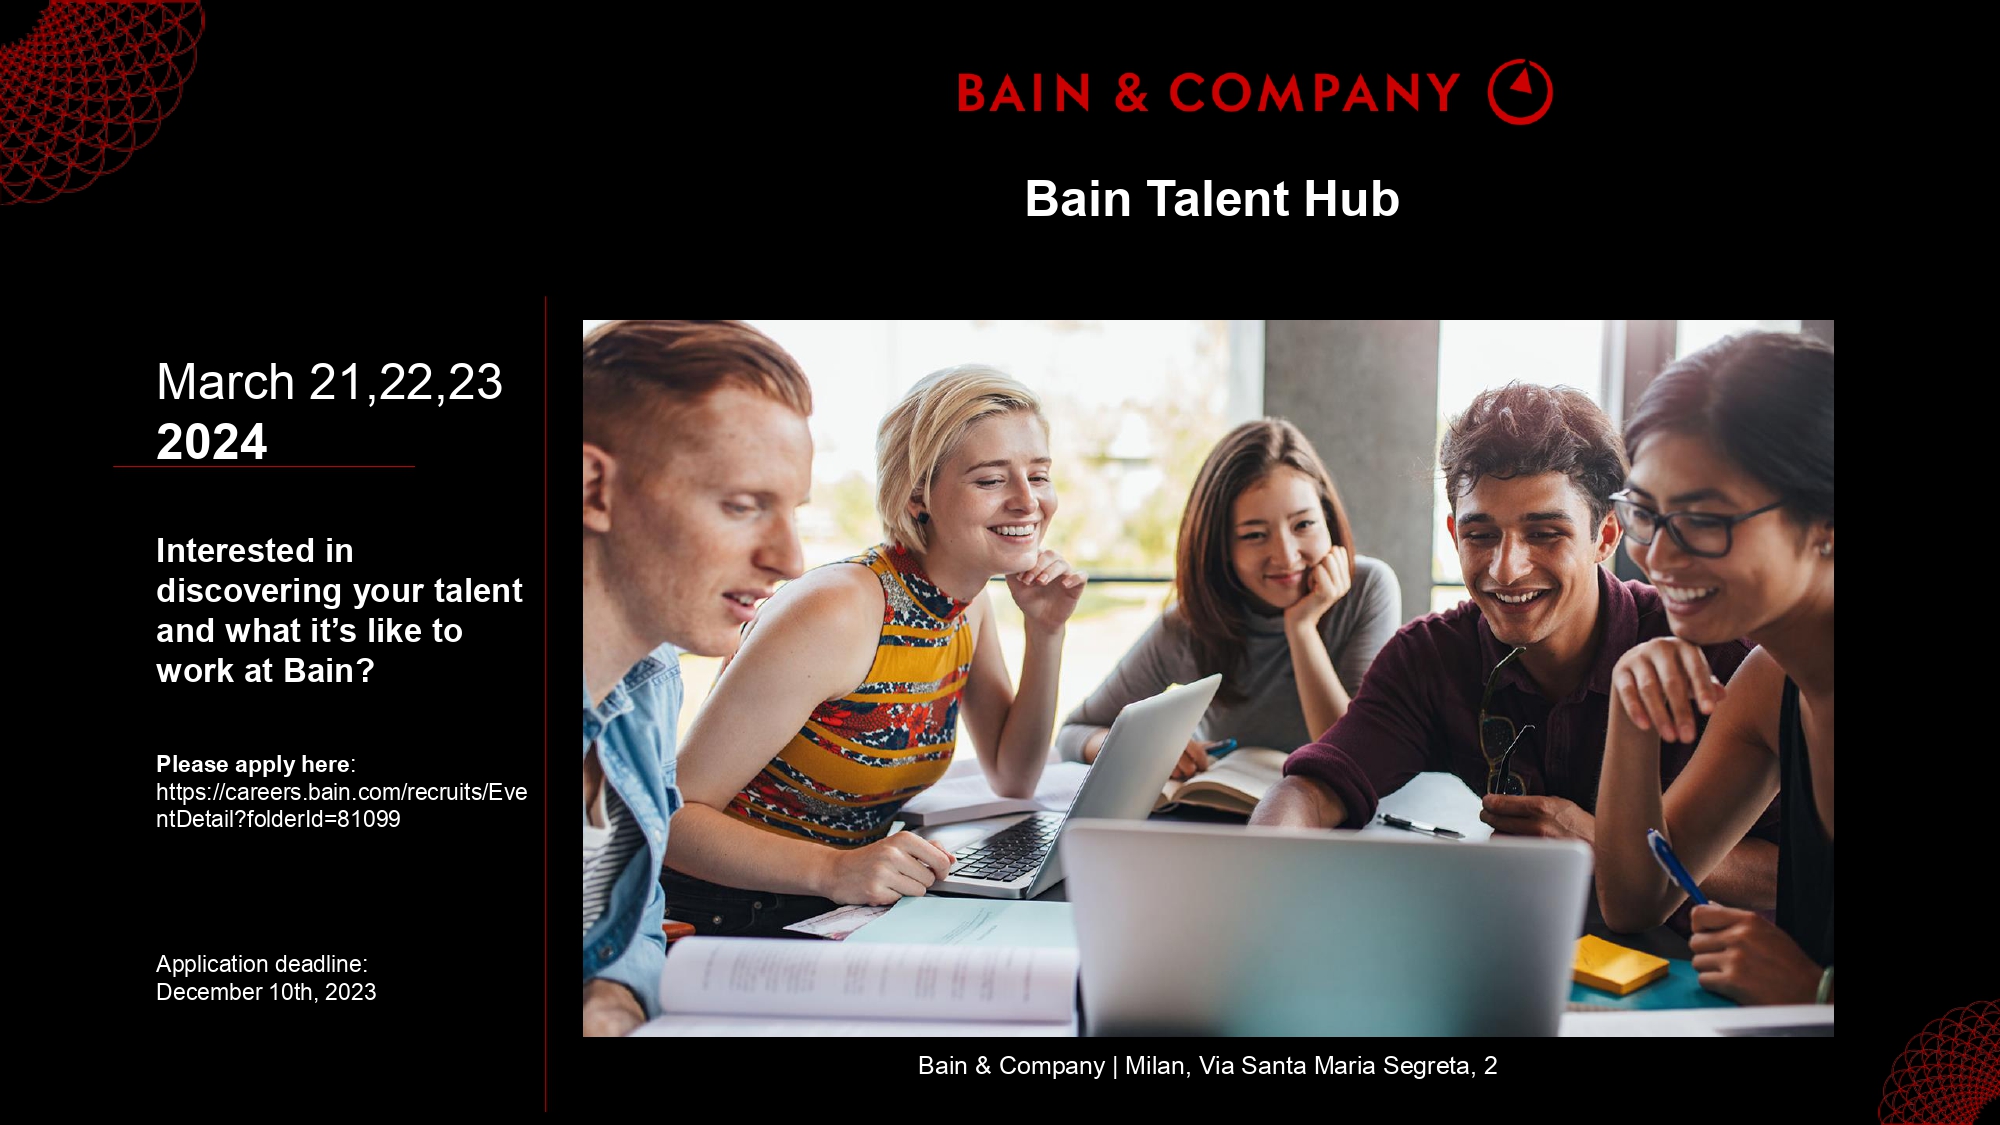 Bain & Company Italy organizza 3 giornate dedicate alla scoperta del proprio talento